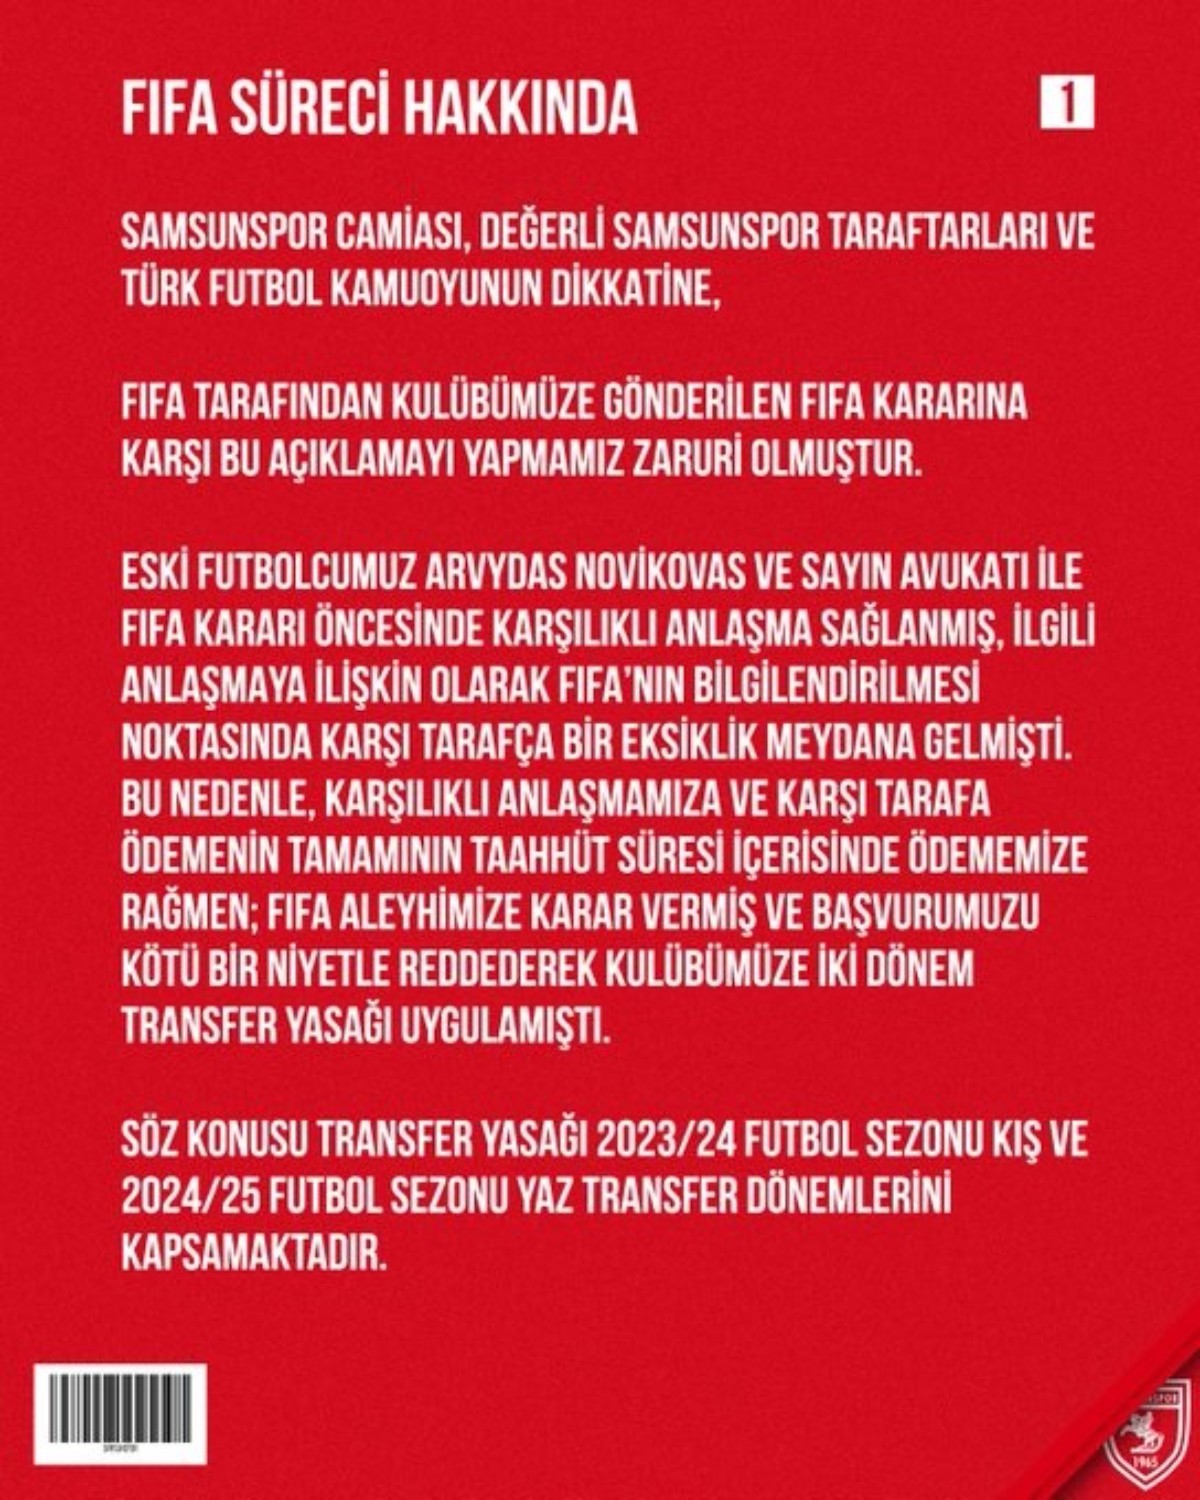 Samsunspor Kulübü'nden 2 dönem transfer yasağına ilişkin açıklama